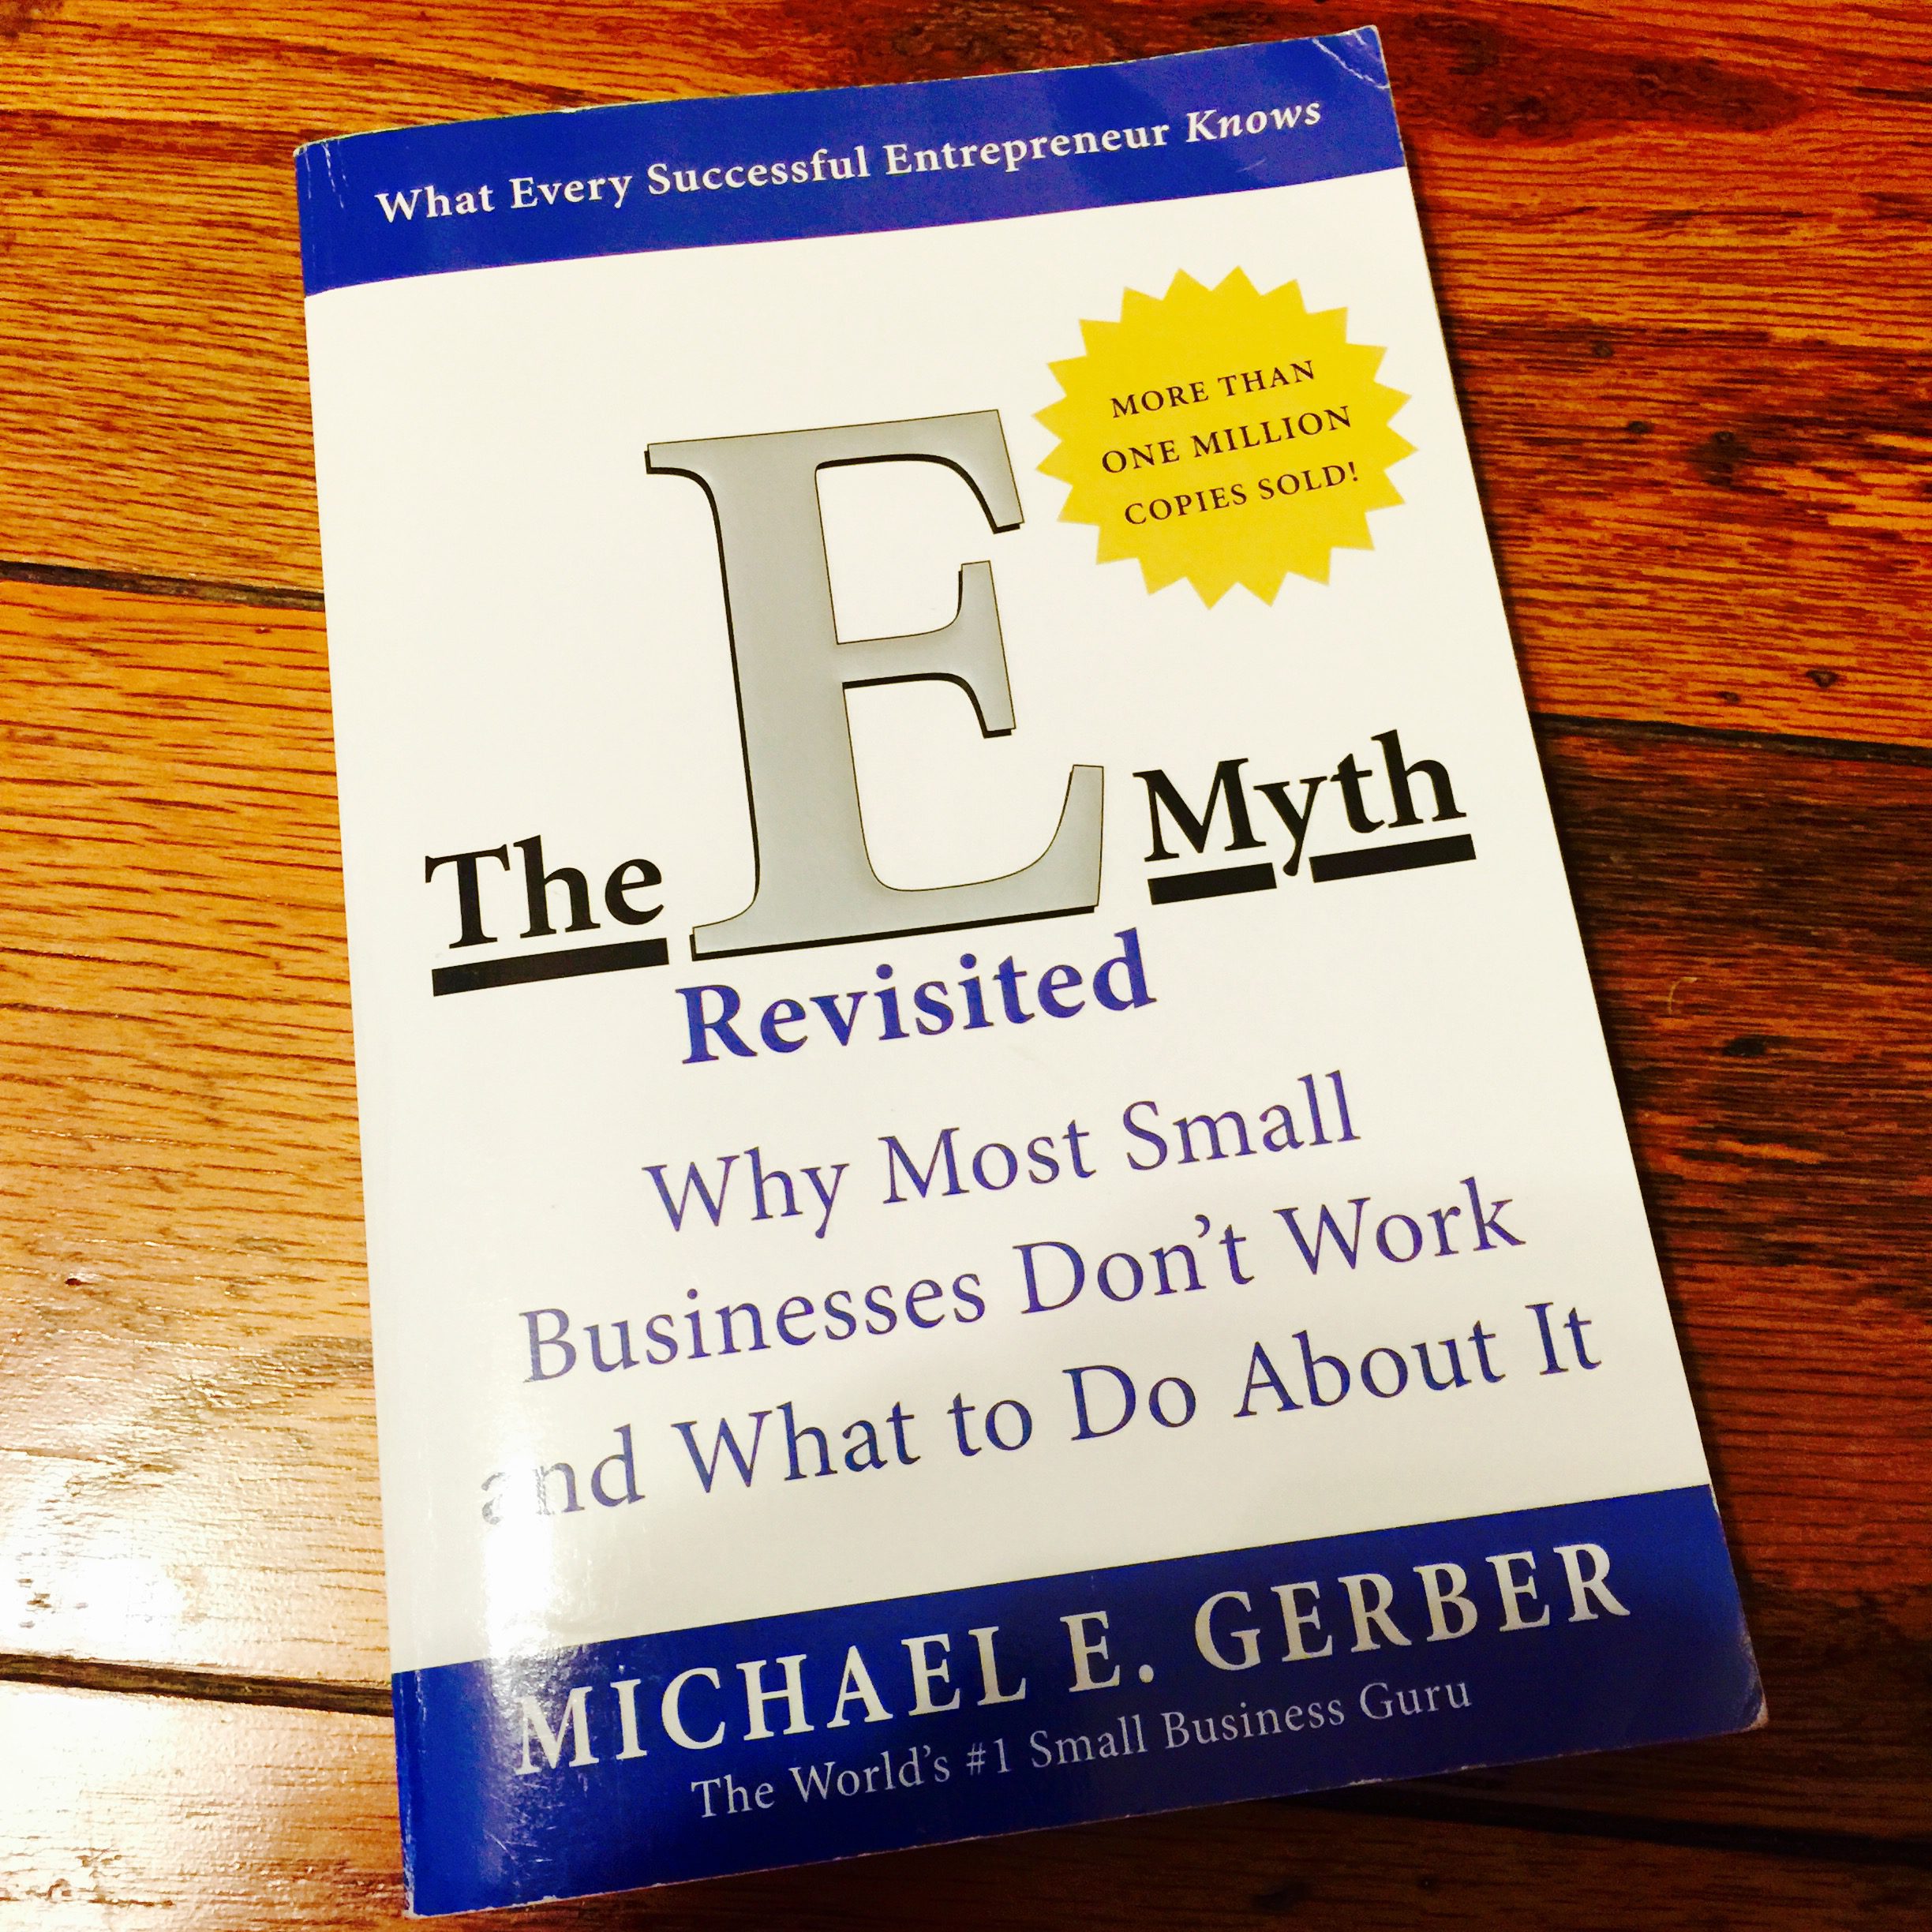 Michael E. Gerber's The E-Myth Revisited